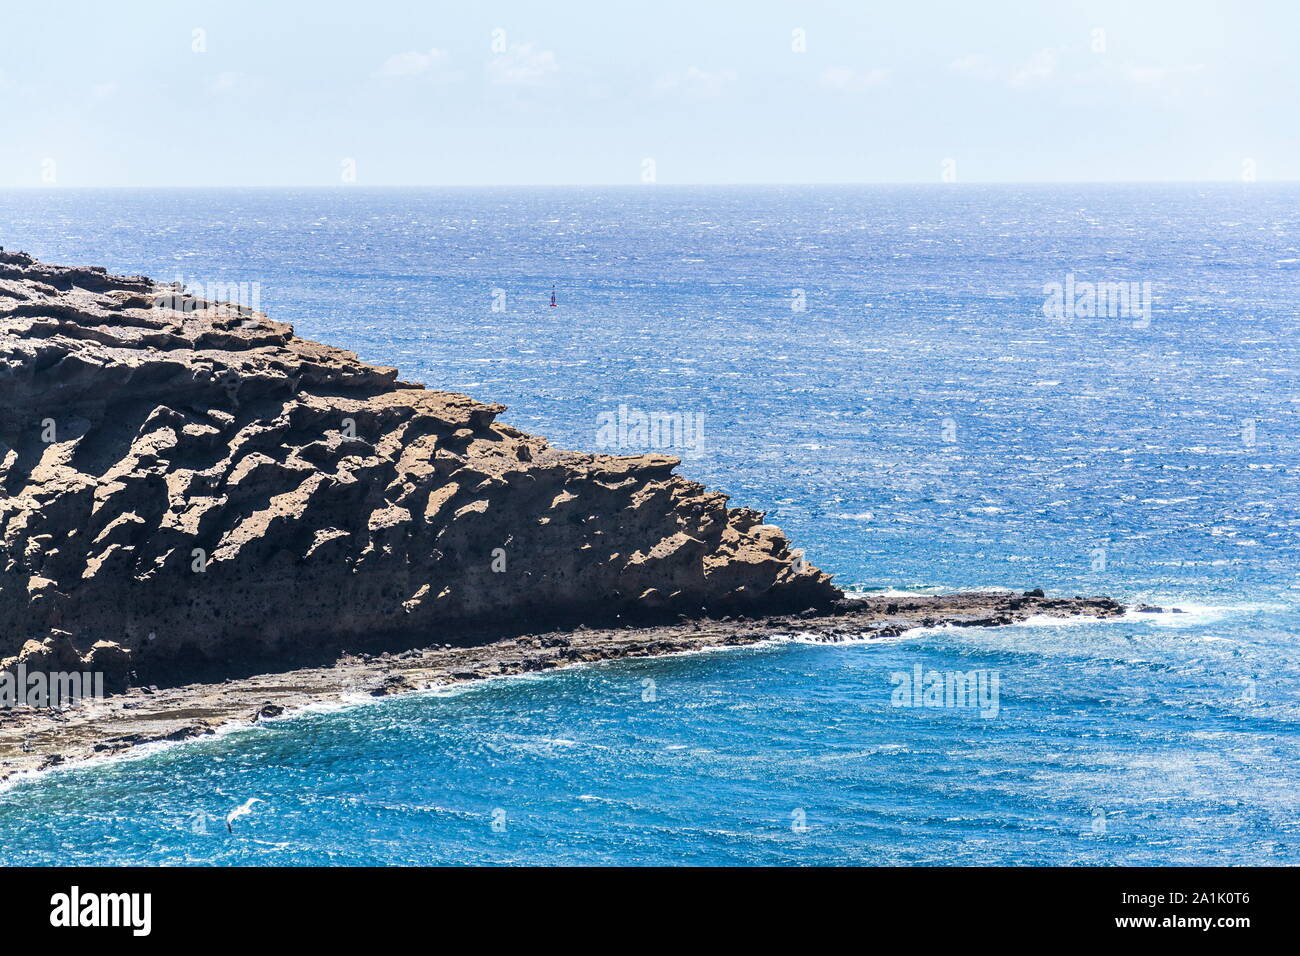 Olas rompiendo en espectaculares acantilados en la costa sur, Montana Montaña Pelada, Tenerife, Islas Canarias, España, un día soleado de verano Foto de stock